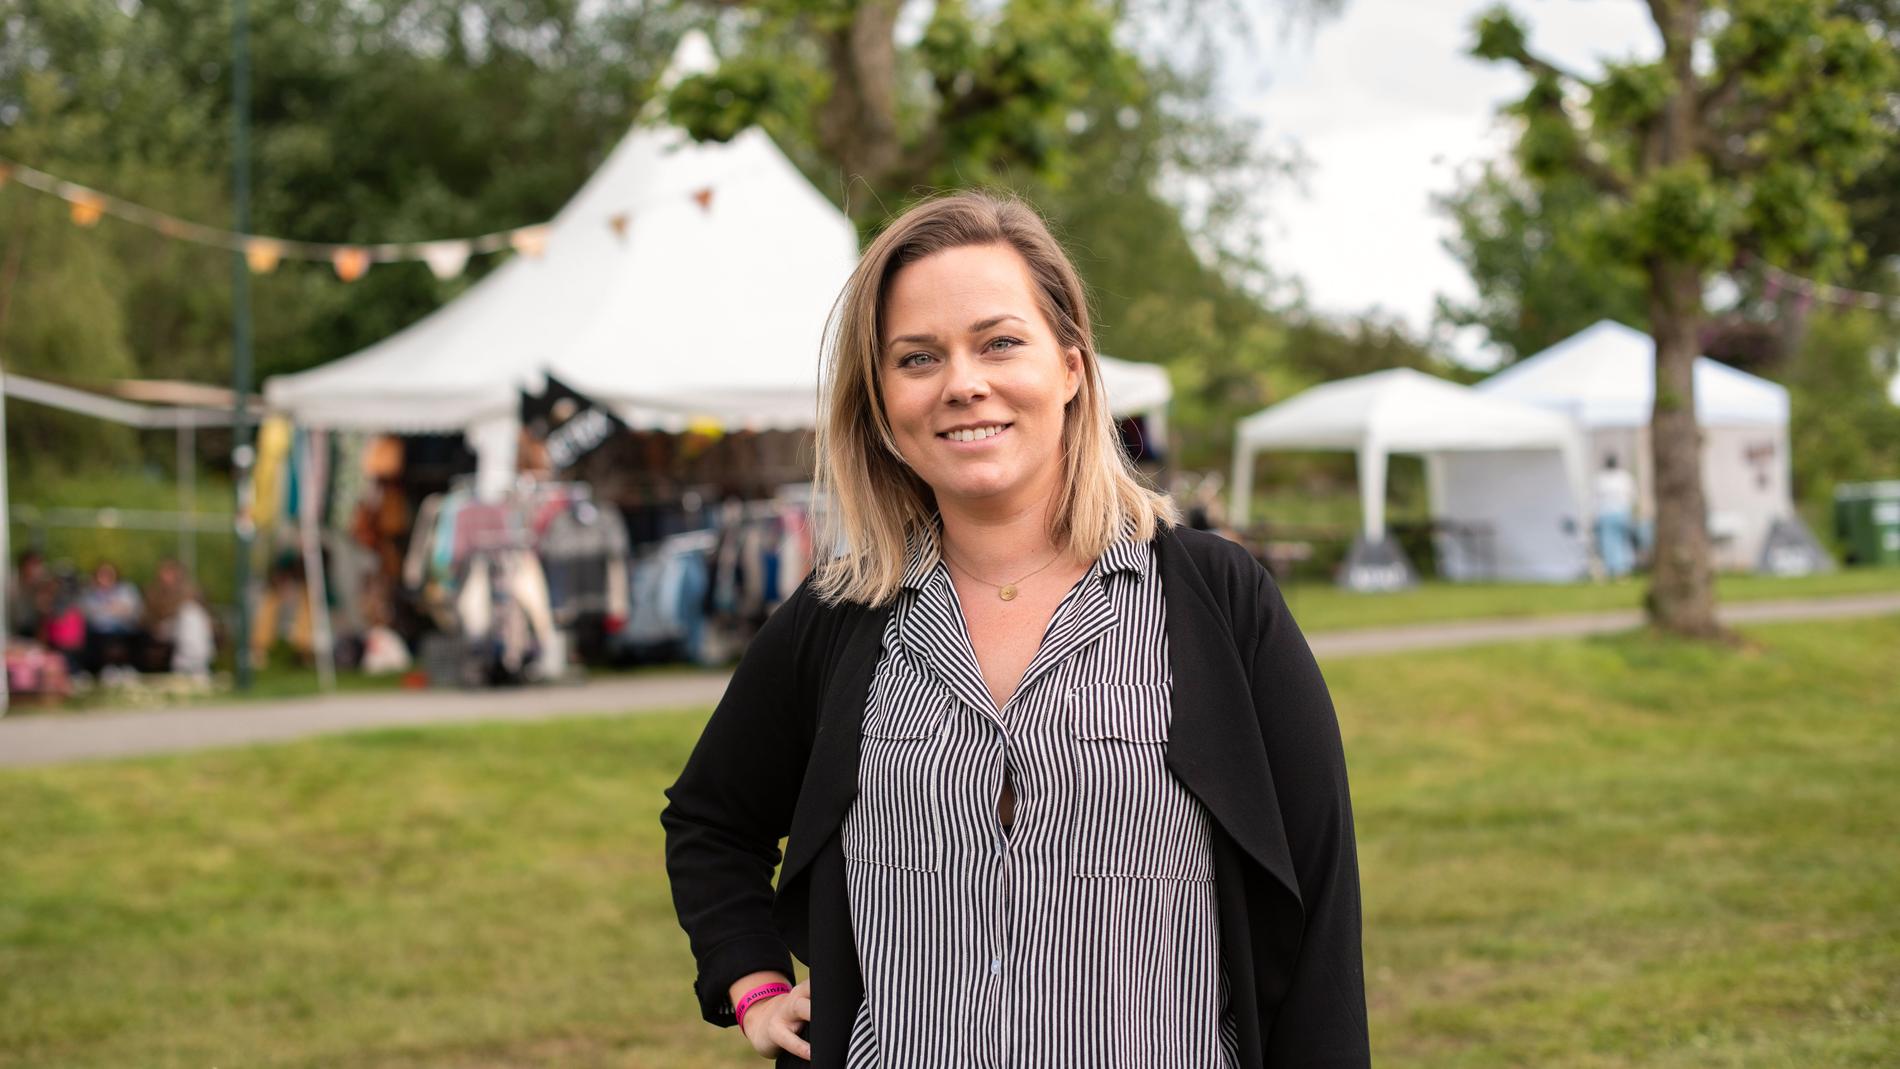 I fjor måtte daglig leder av Mablis, Eirin Sandstad, avlyse festivalen på grunn av koronapandemien. 